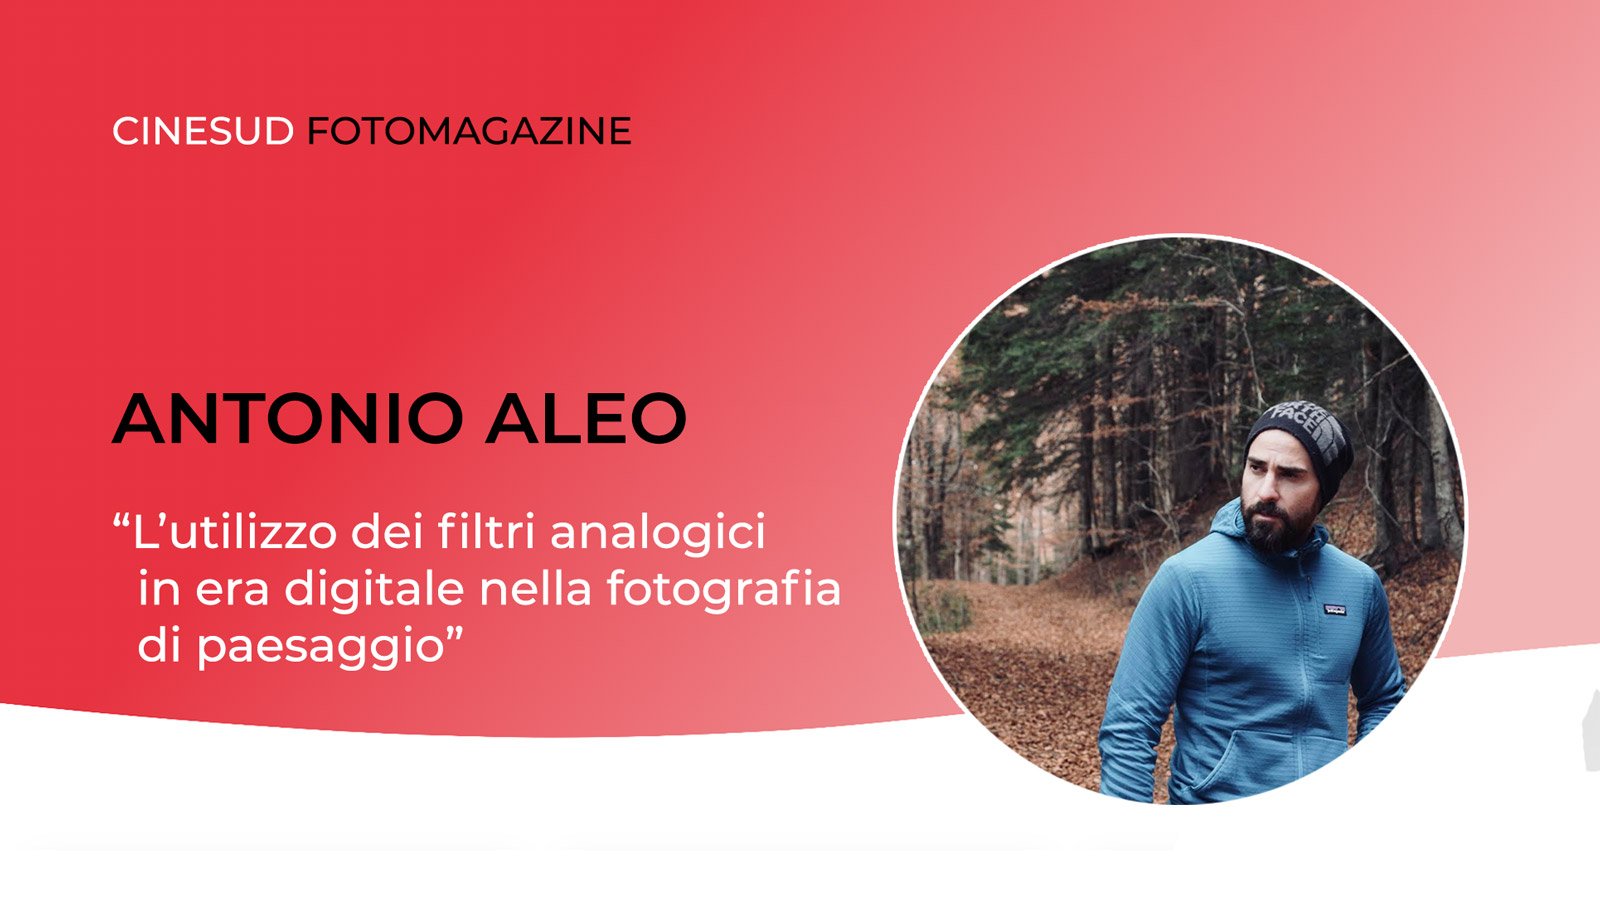 Antonio Aleo - L'utilizzo dei filtri analogici in era digitale nella fotografia di paesaggio